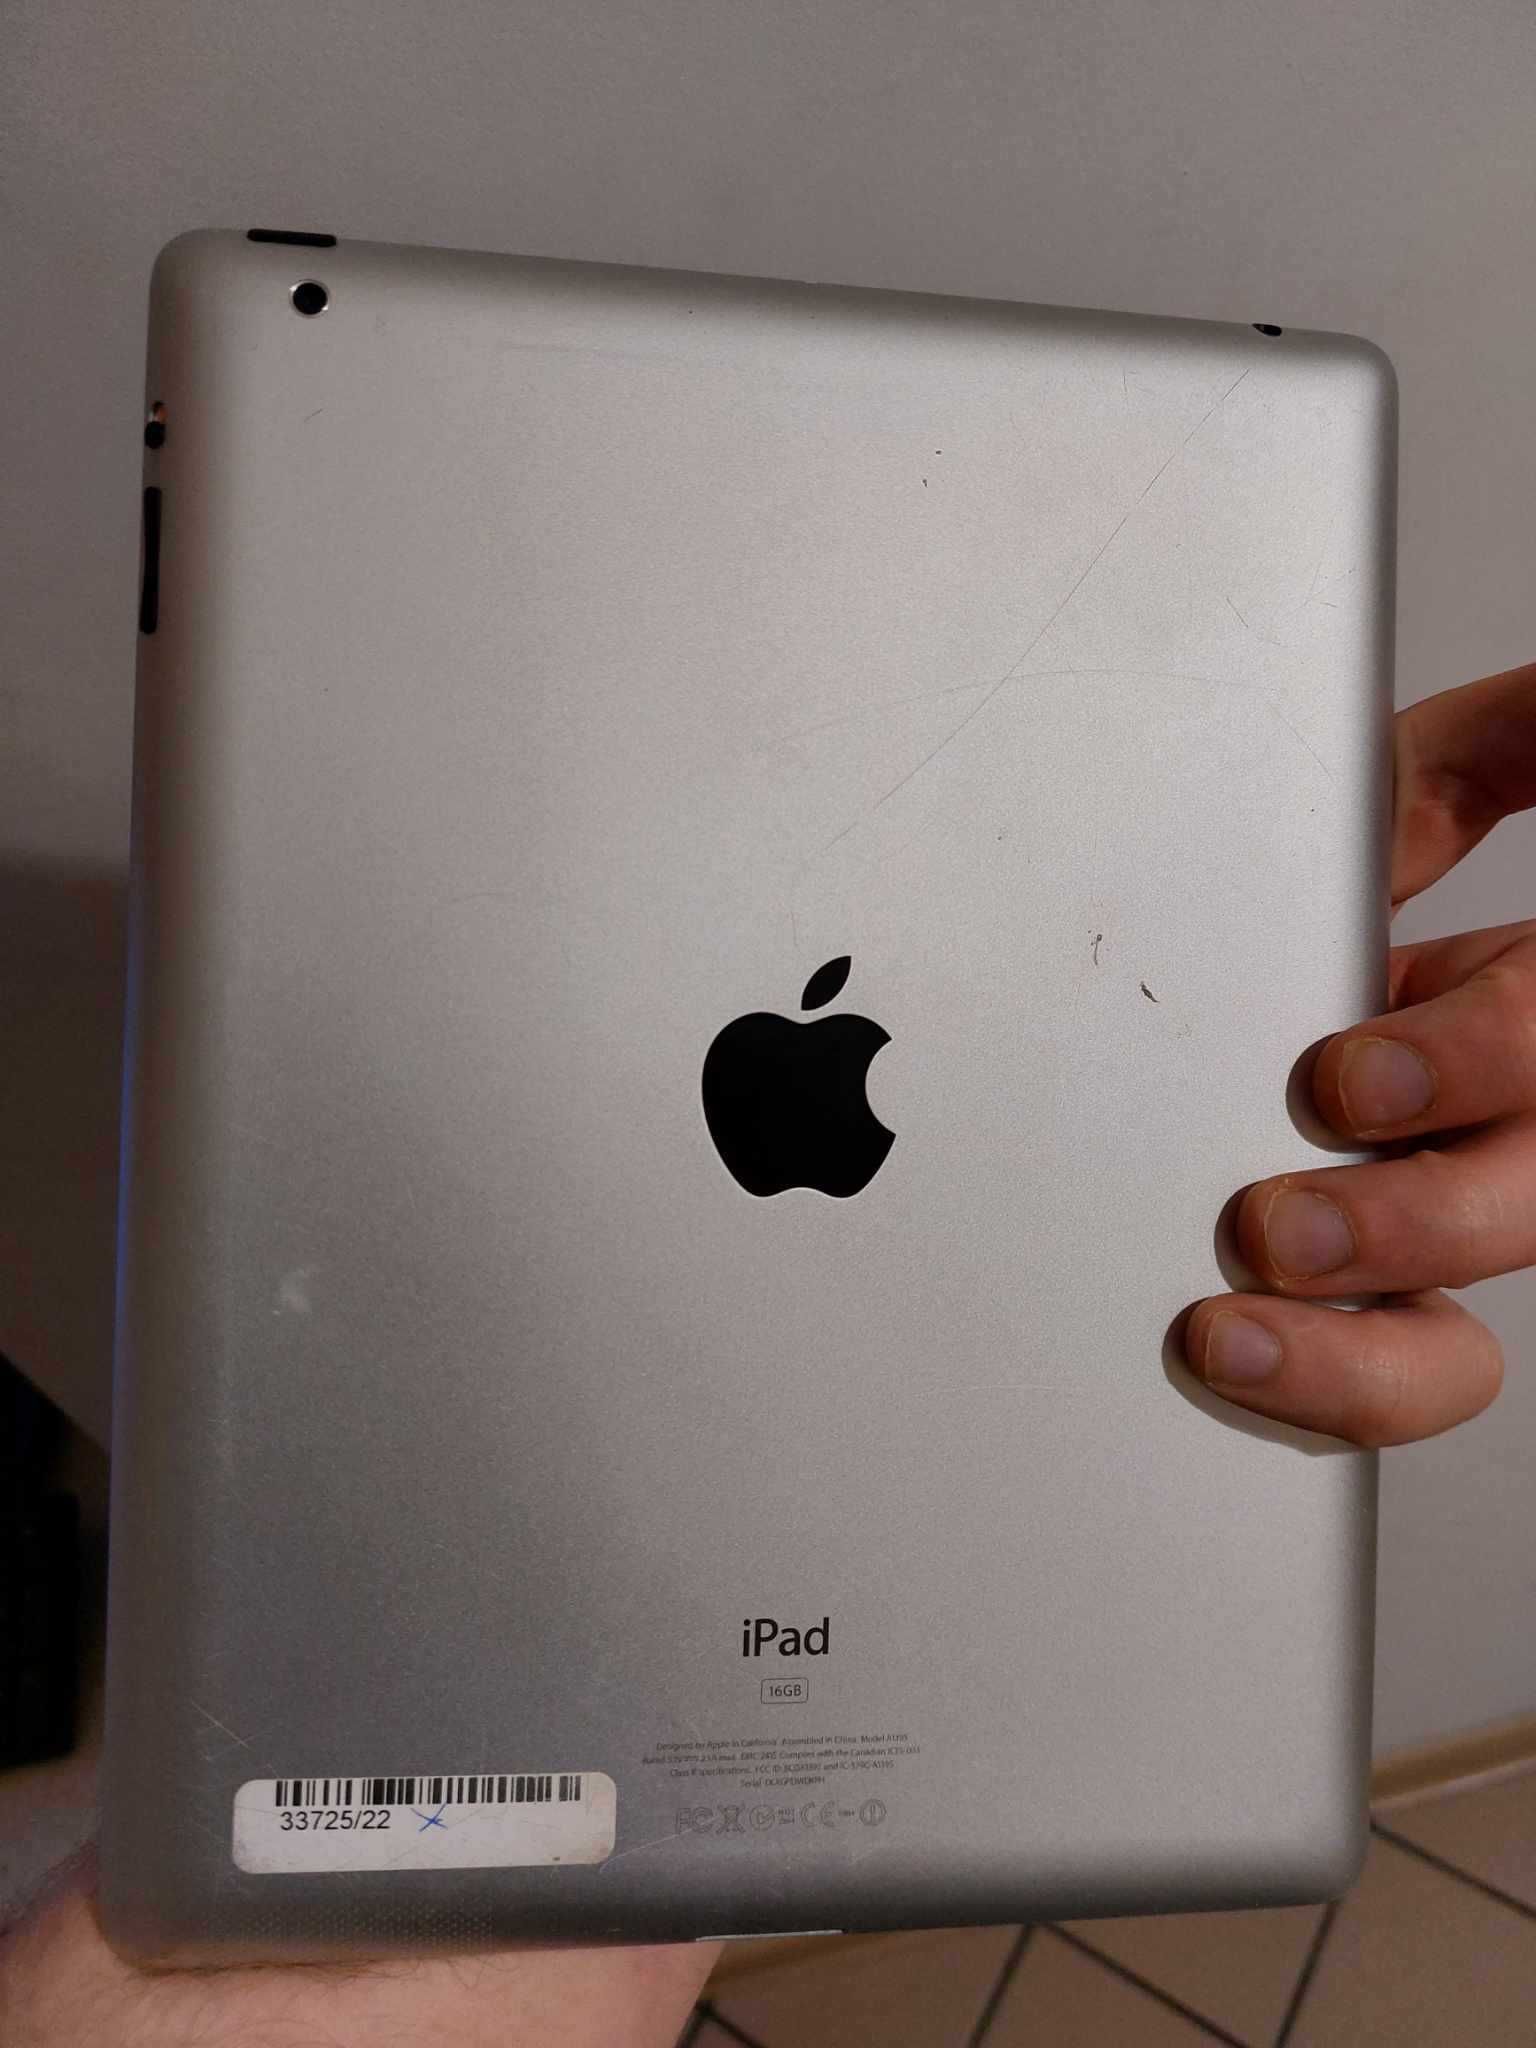 Apple iPad 16GB (A1395)